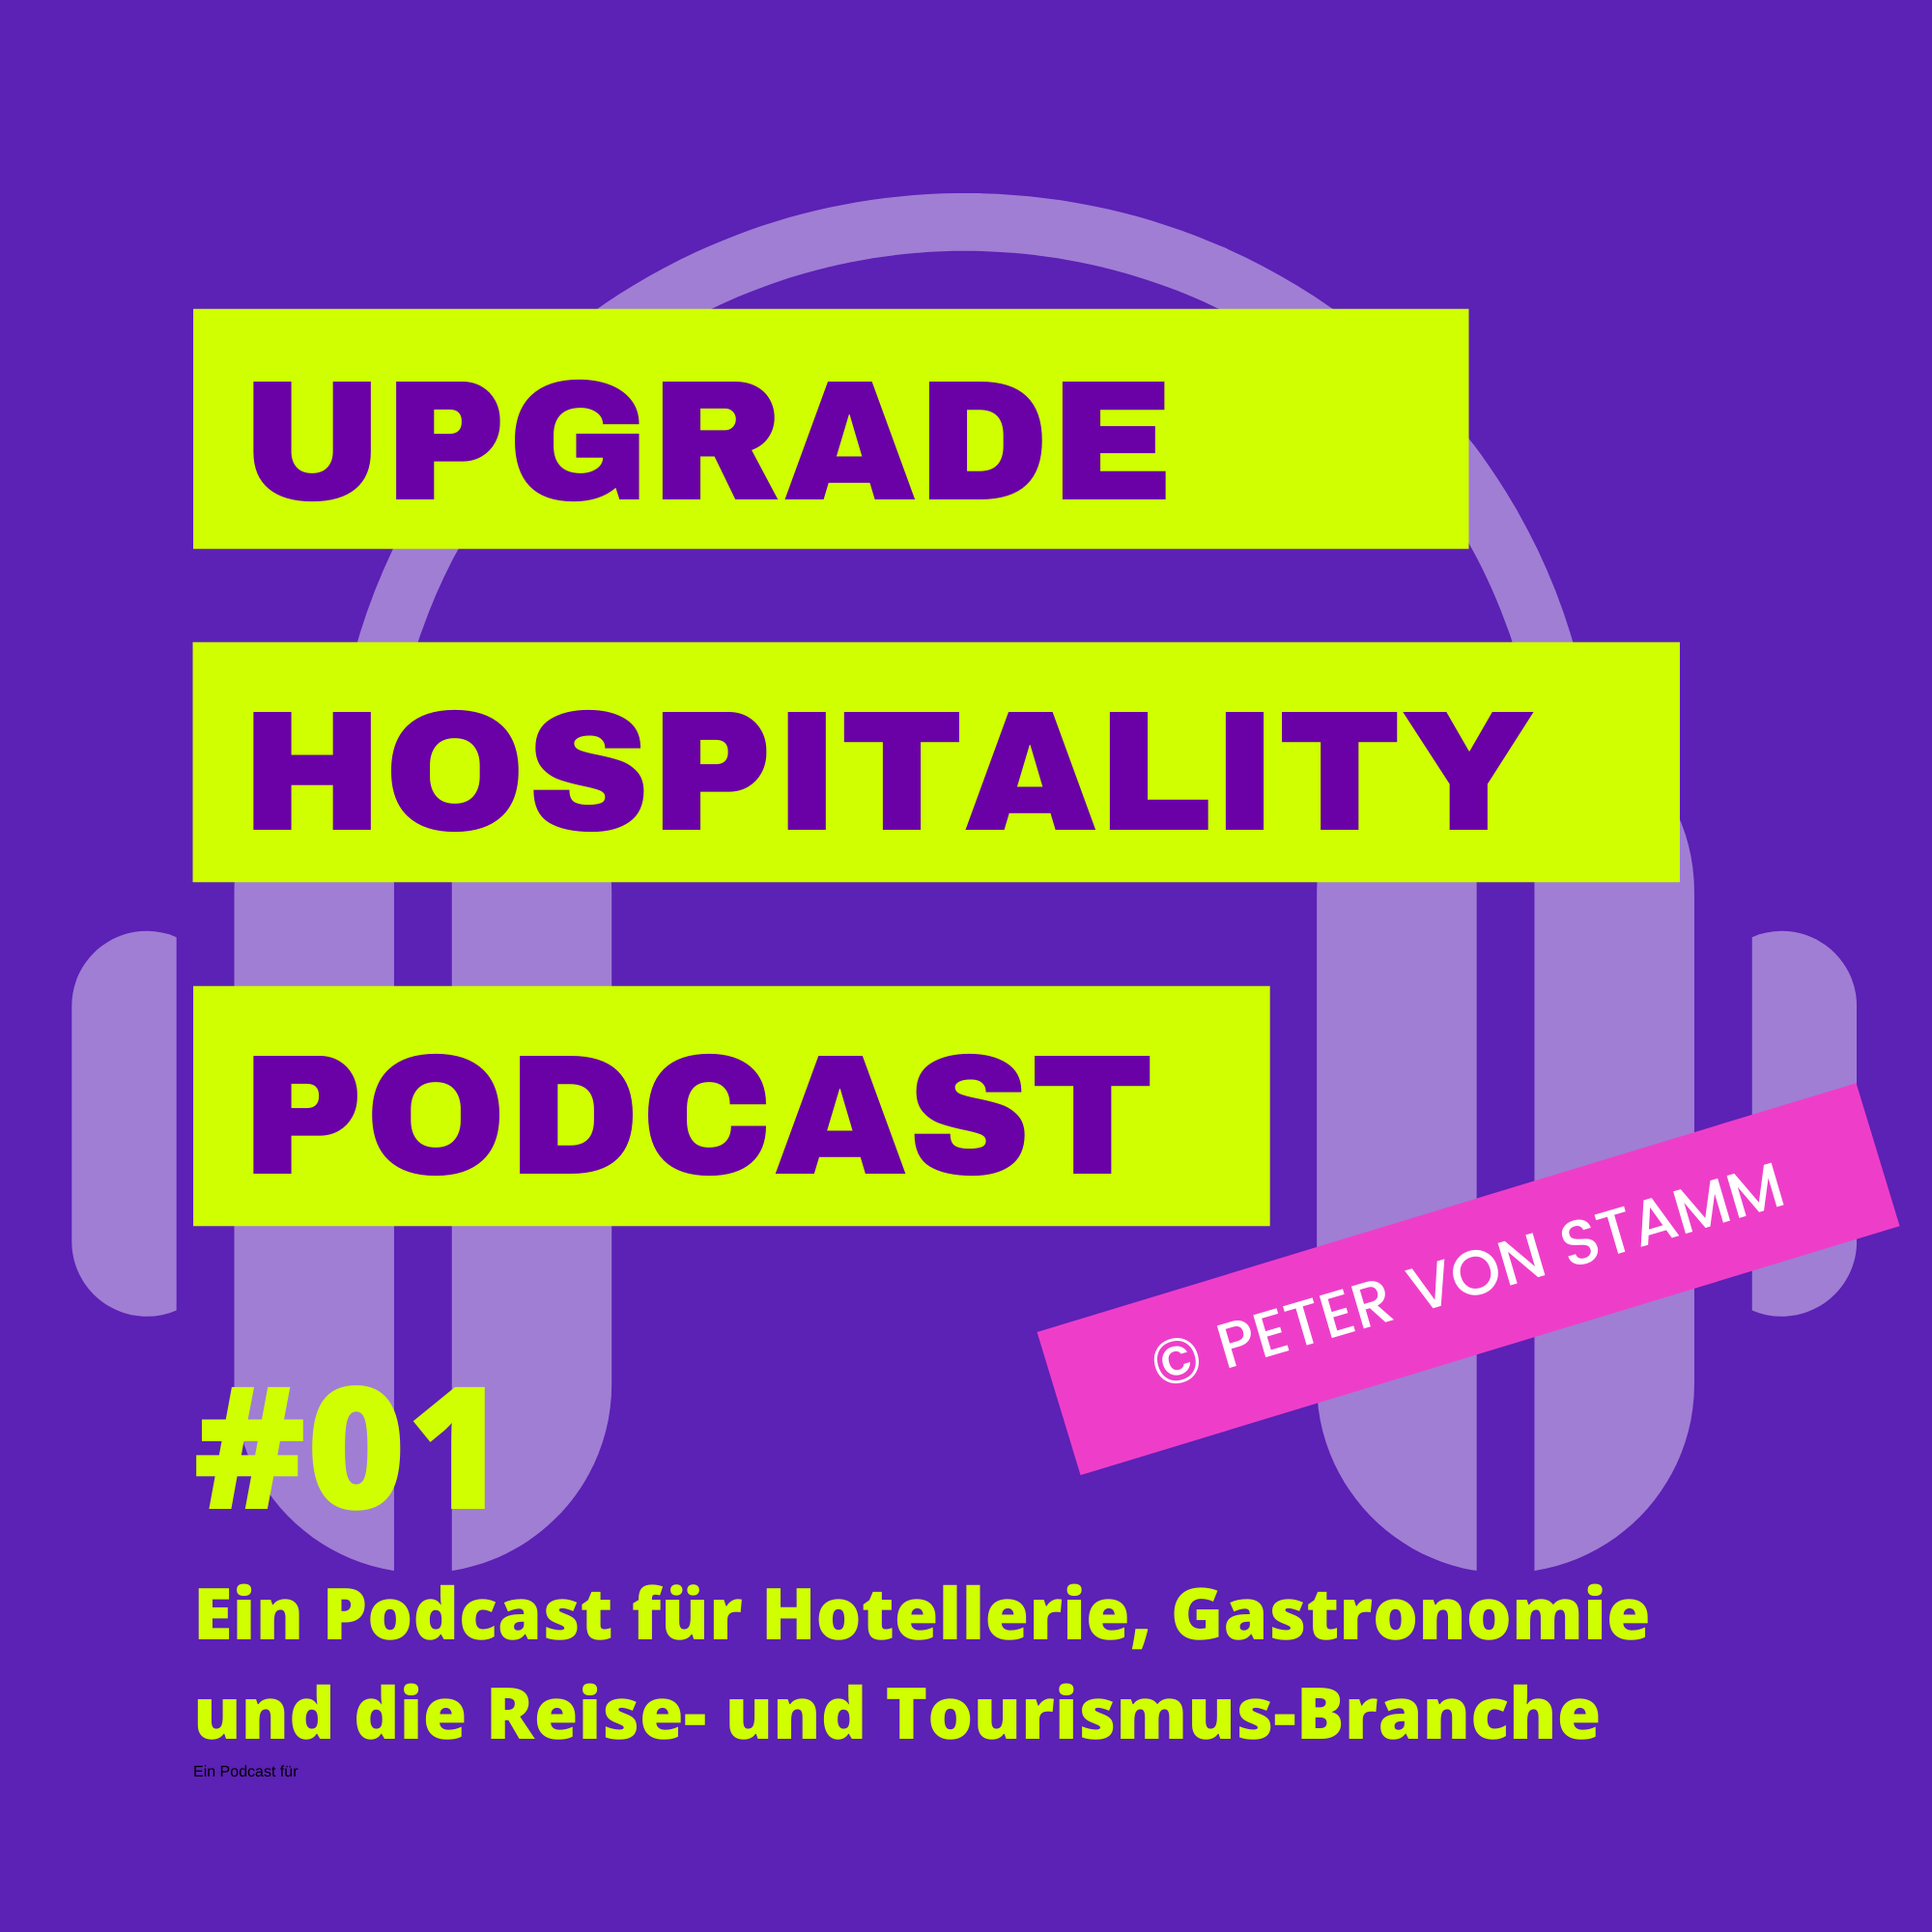 A highlight from #41 Philipp Reiter - Trailrunner aus Bad Reichenhall im Podcast Interview